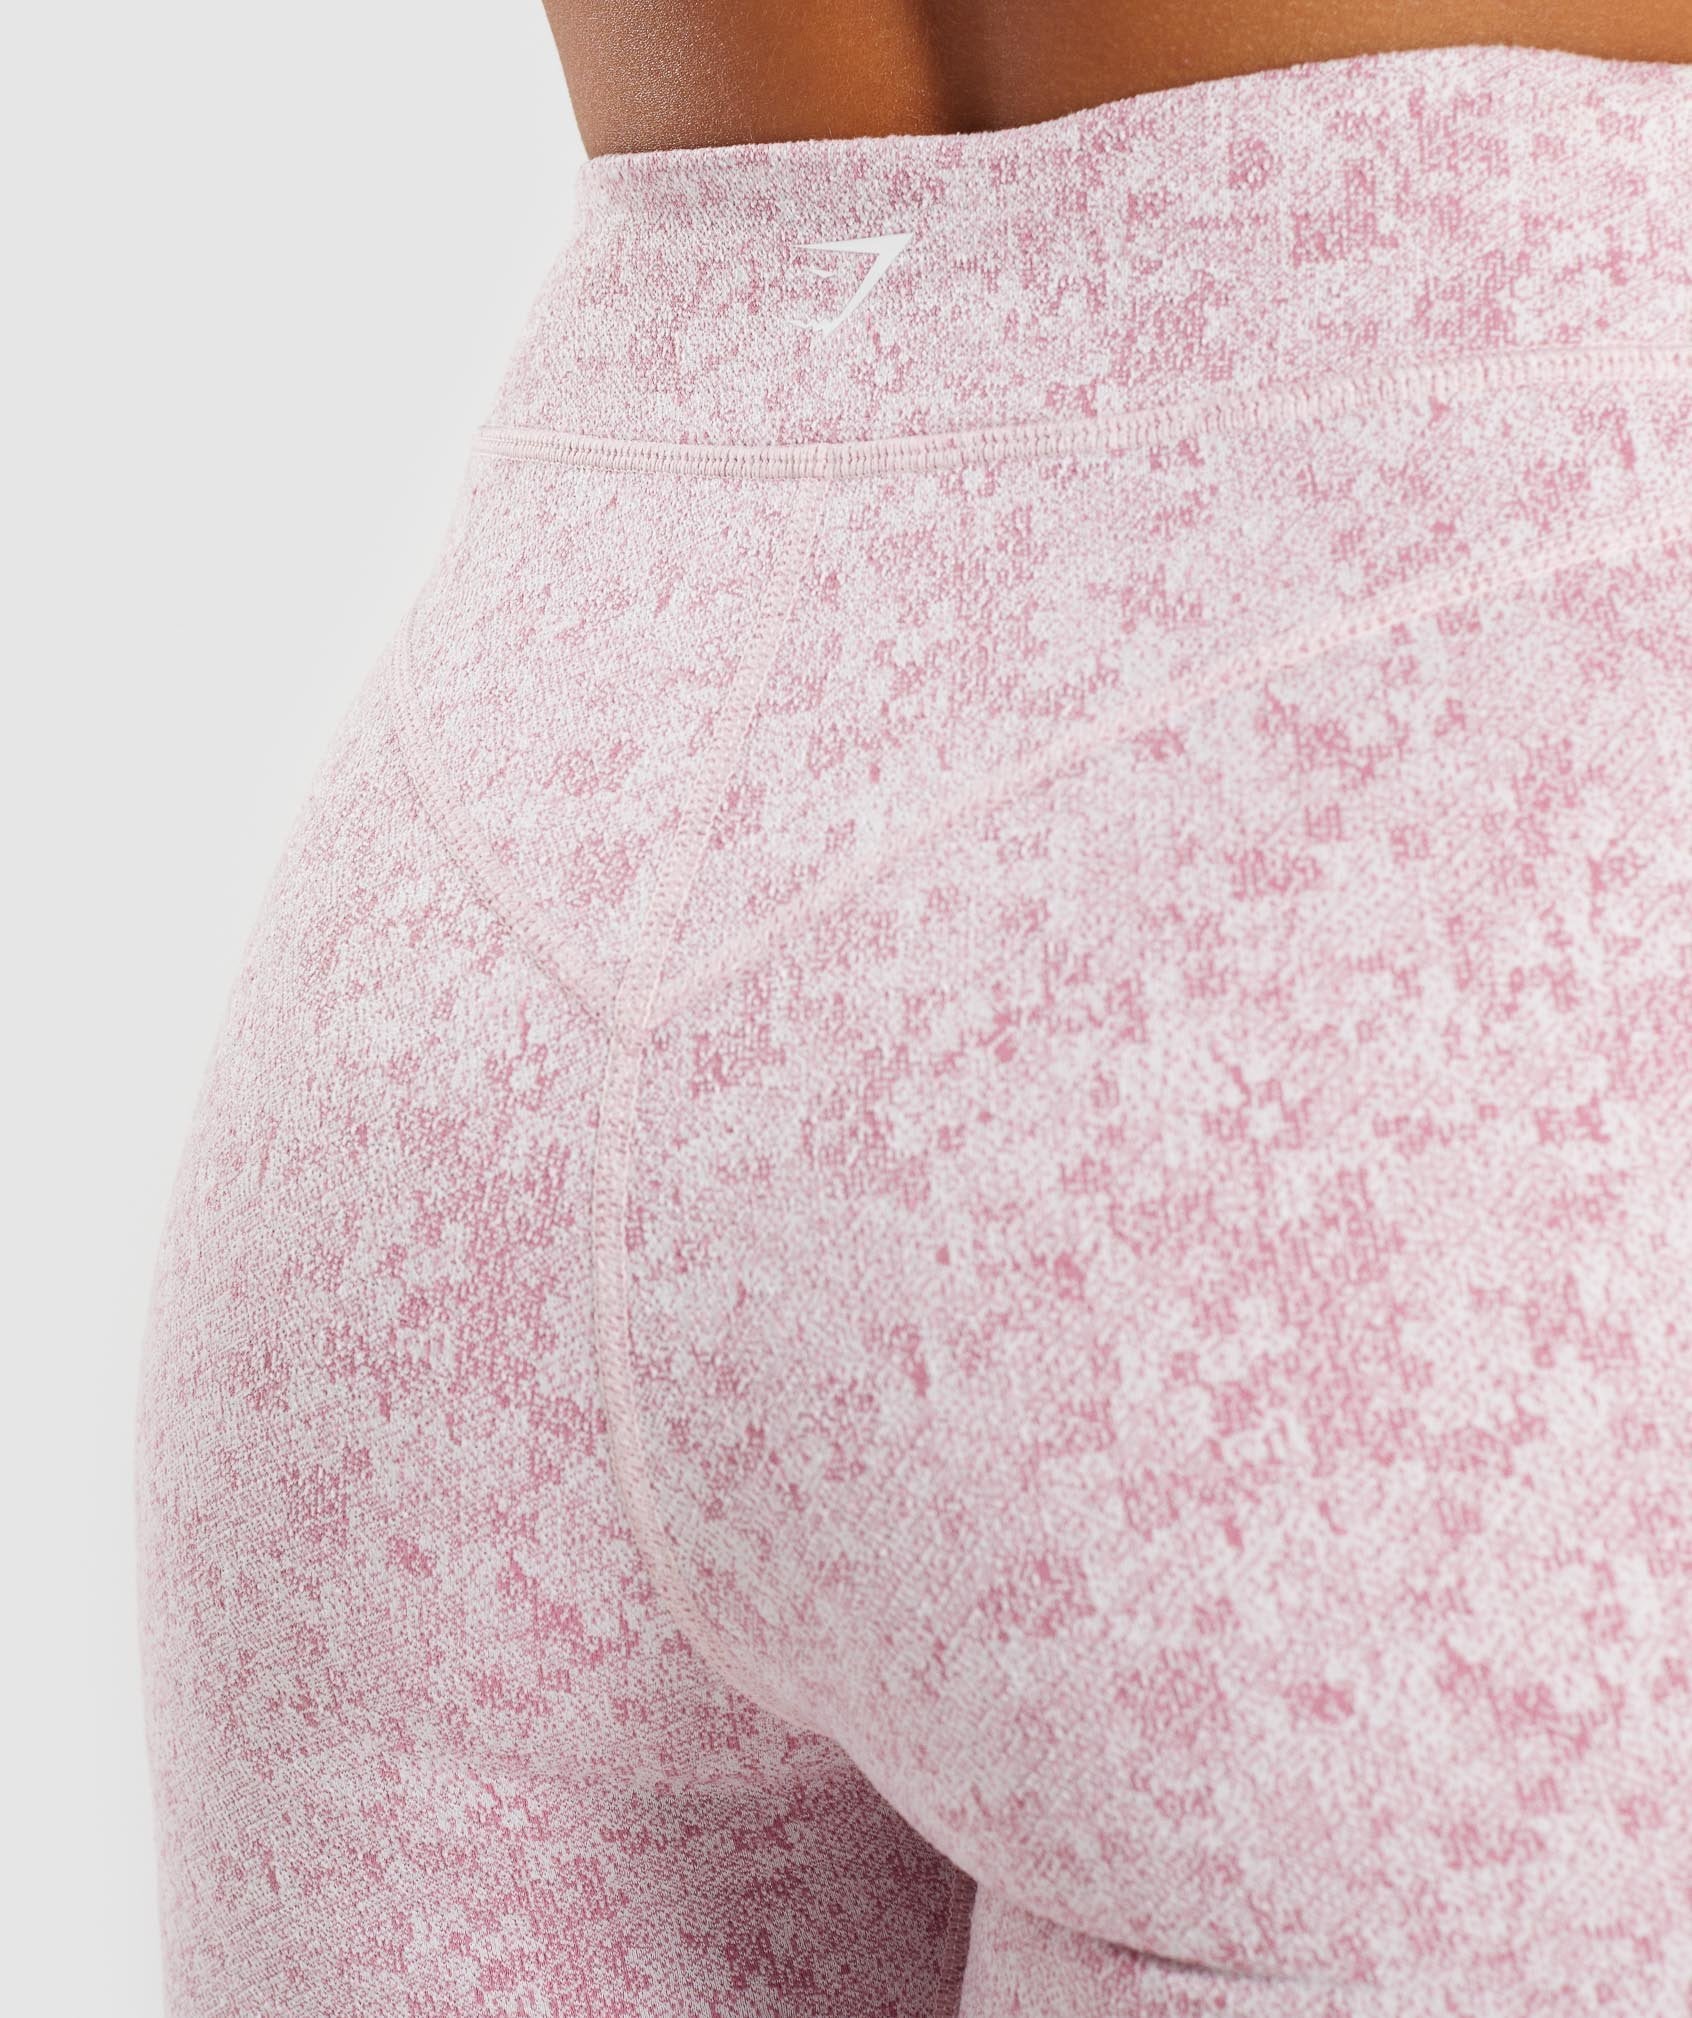 Fleur Texture Leggings in Dusky Pink Marl - view 5